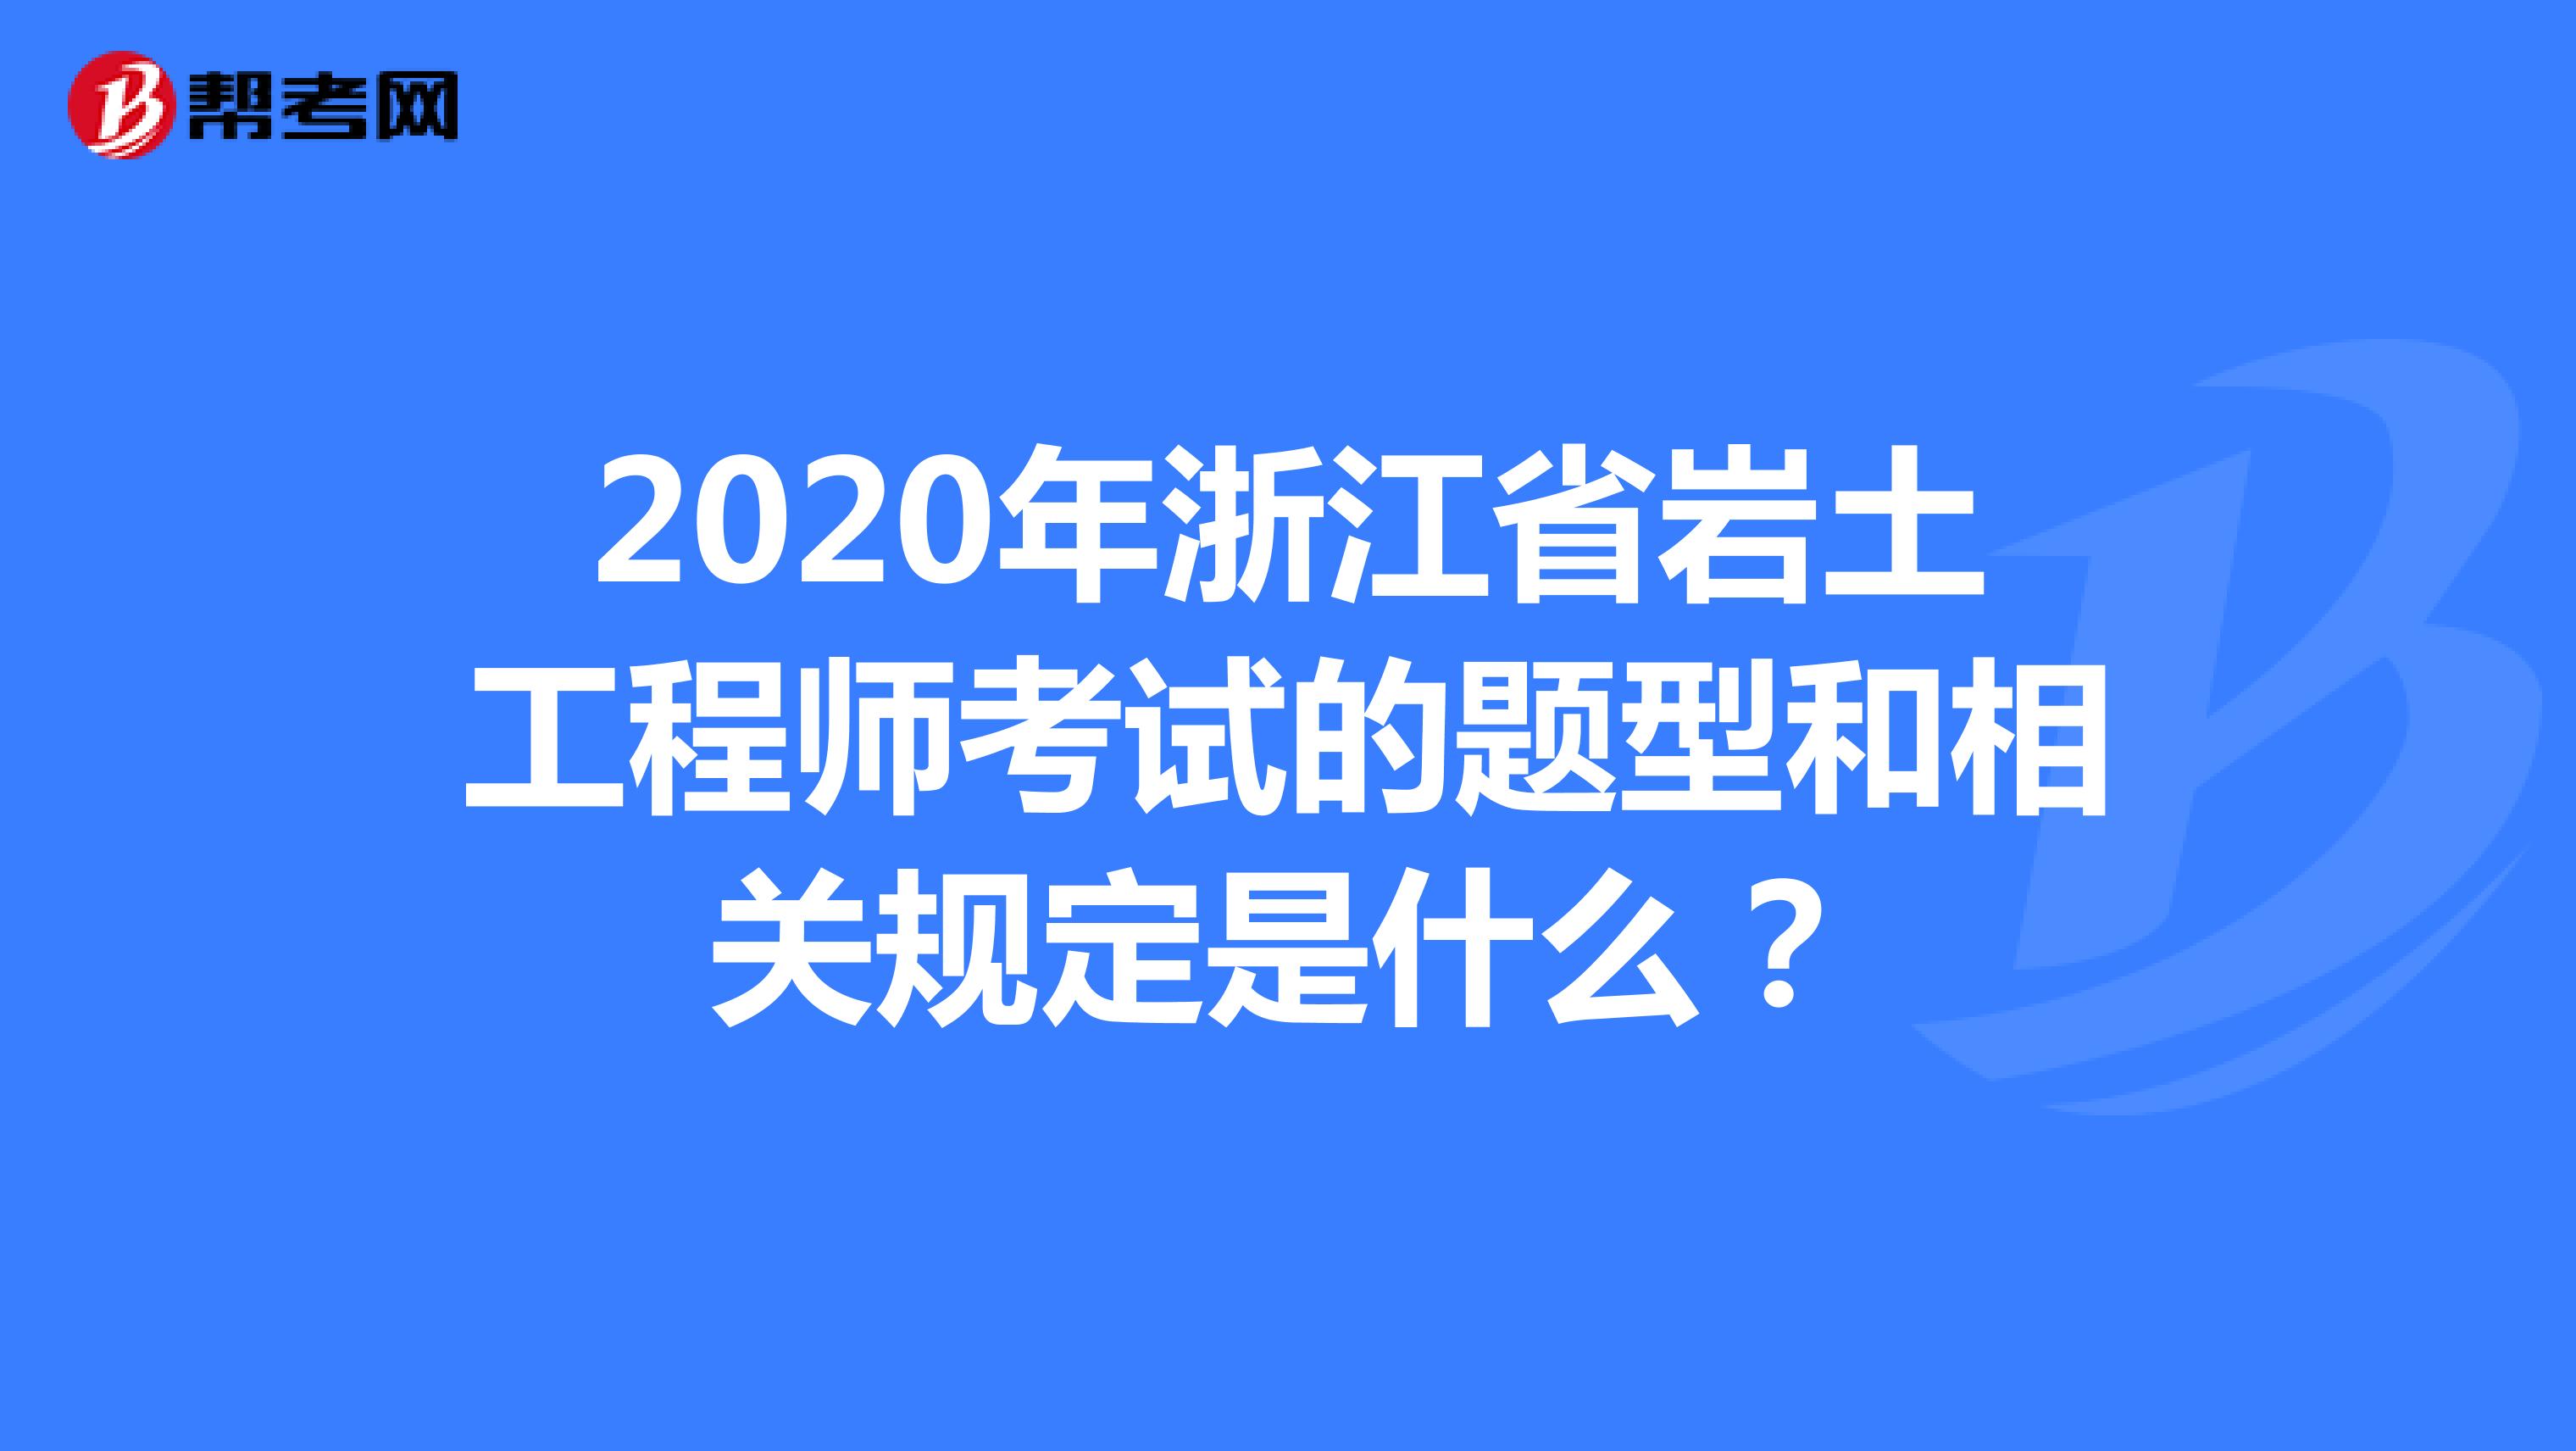 2020年浙江省岩土工程师考试的题型和相关规定是什么？